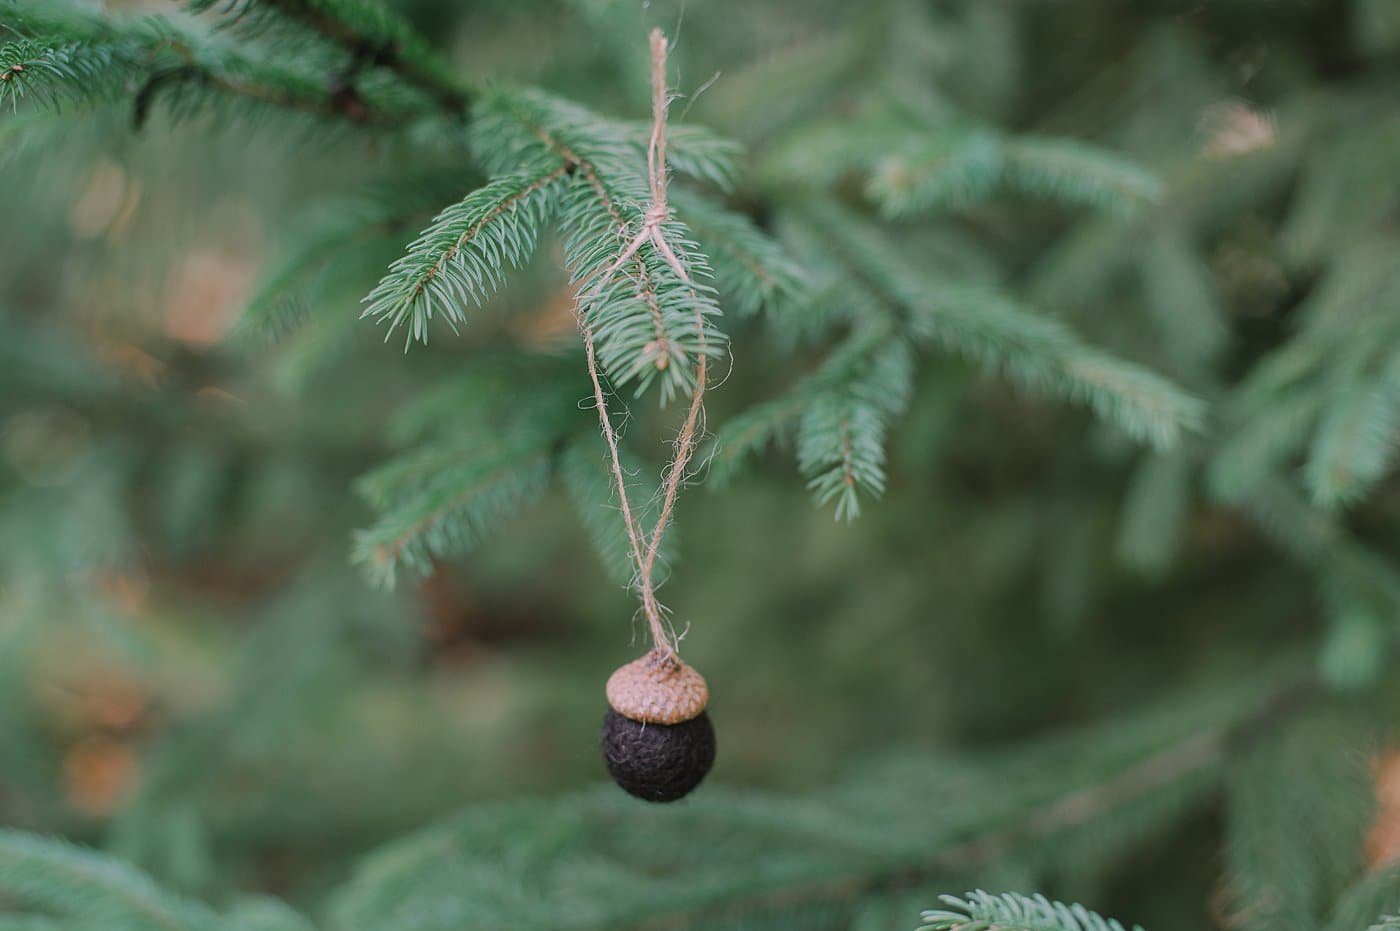 How to make acorn ornaments using acorn caps and felt balls.